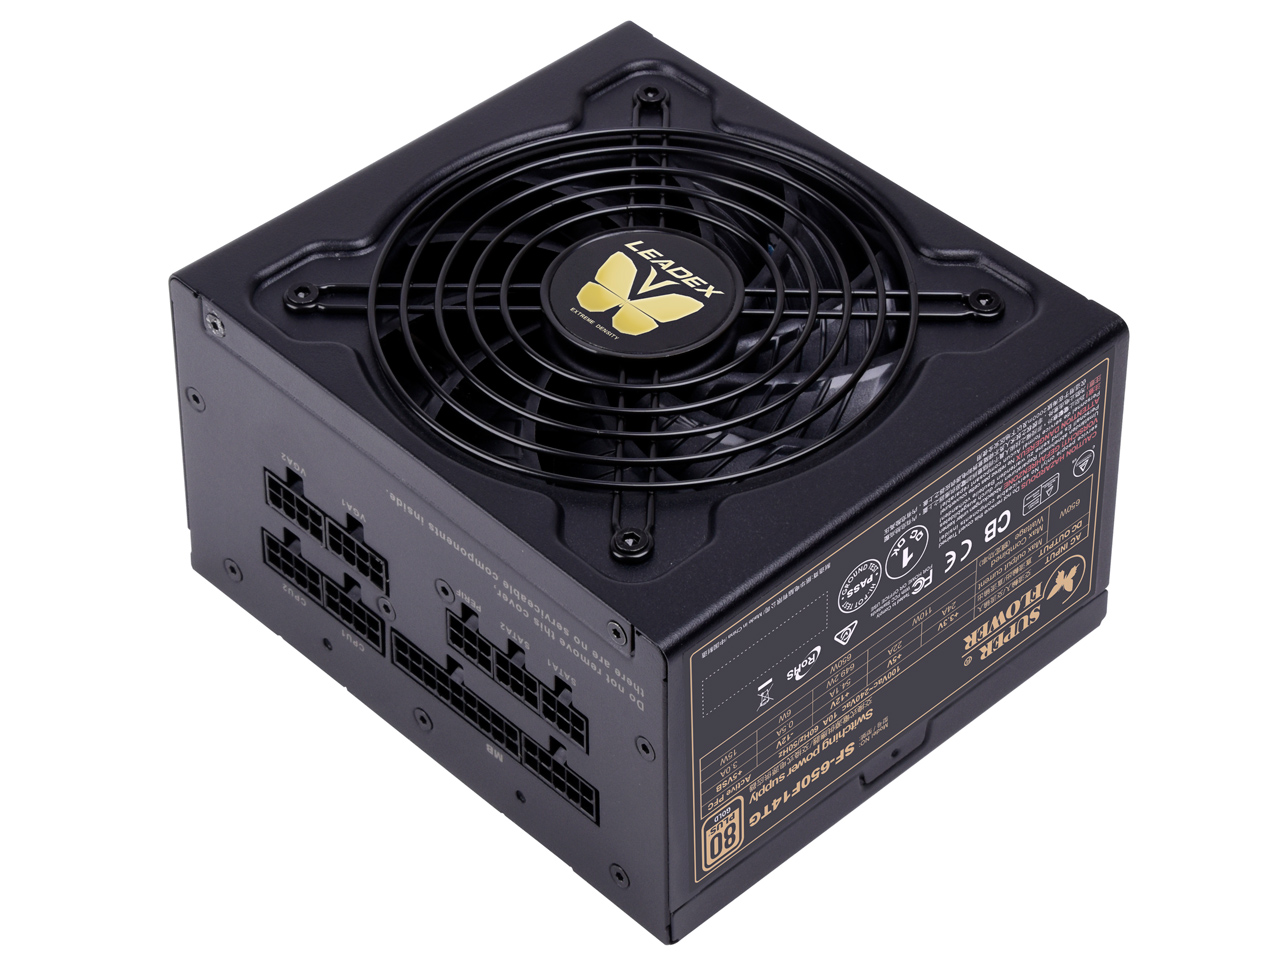 価格.com - LEADEX V Gold 650W の製品画像